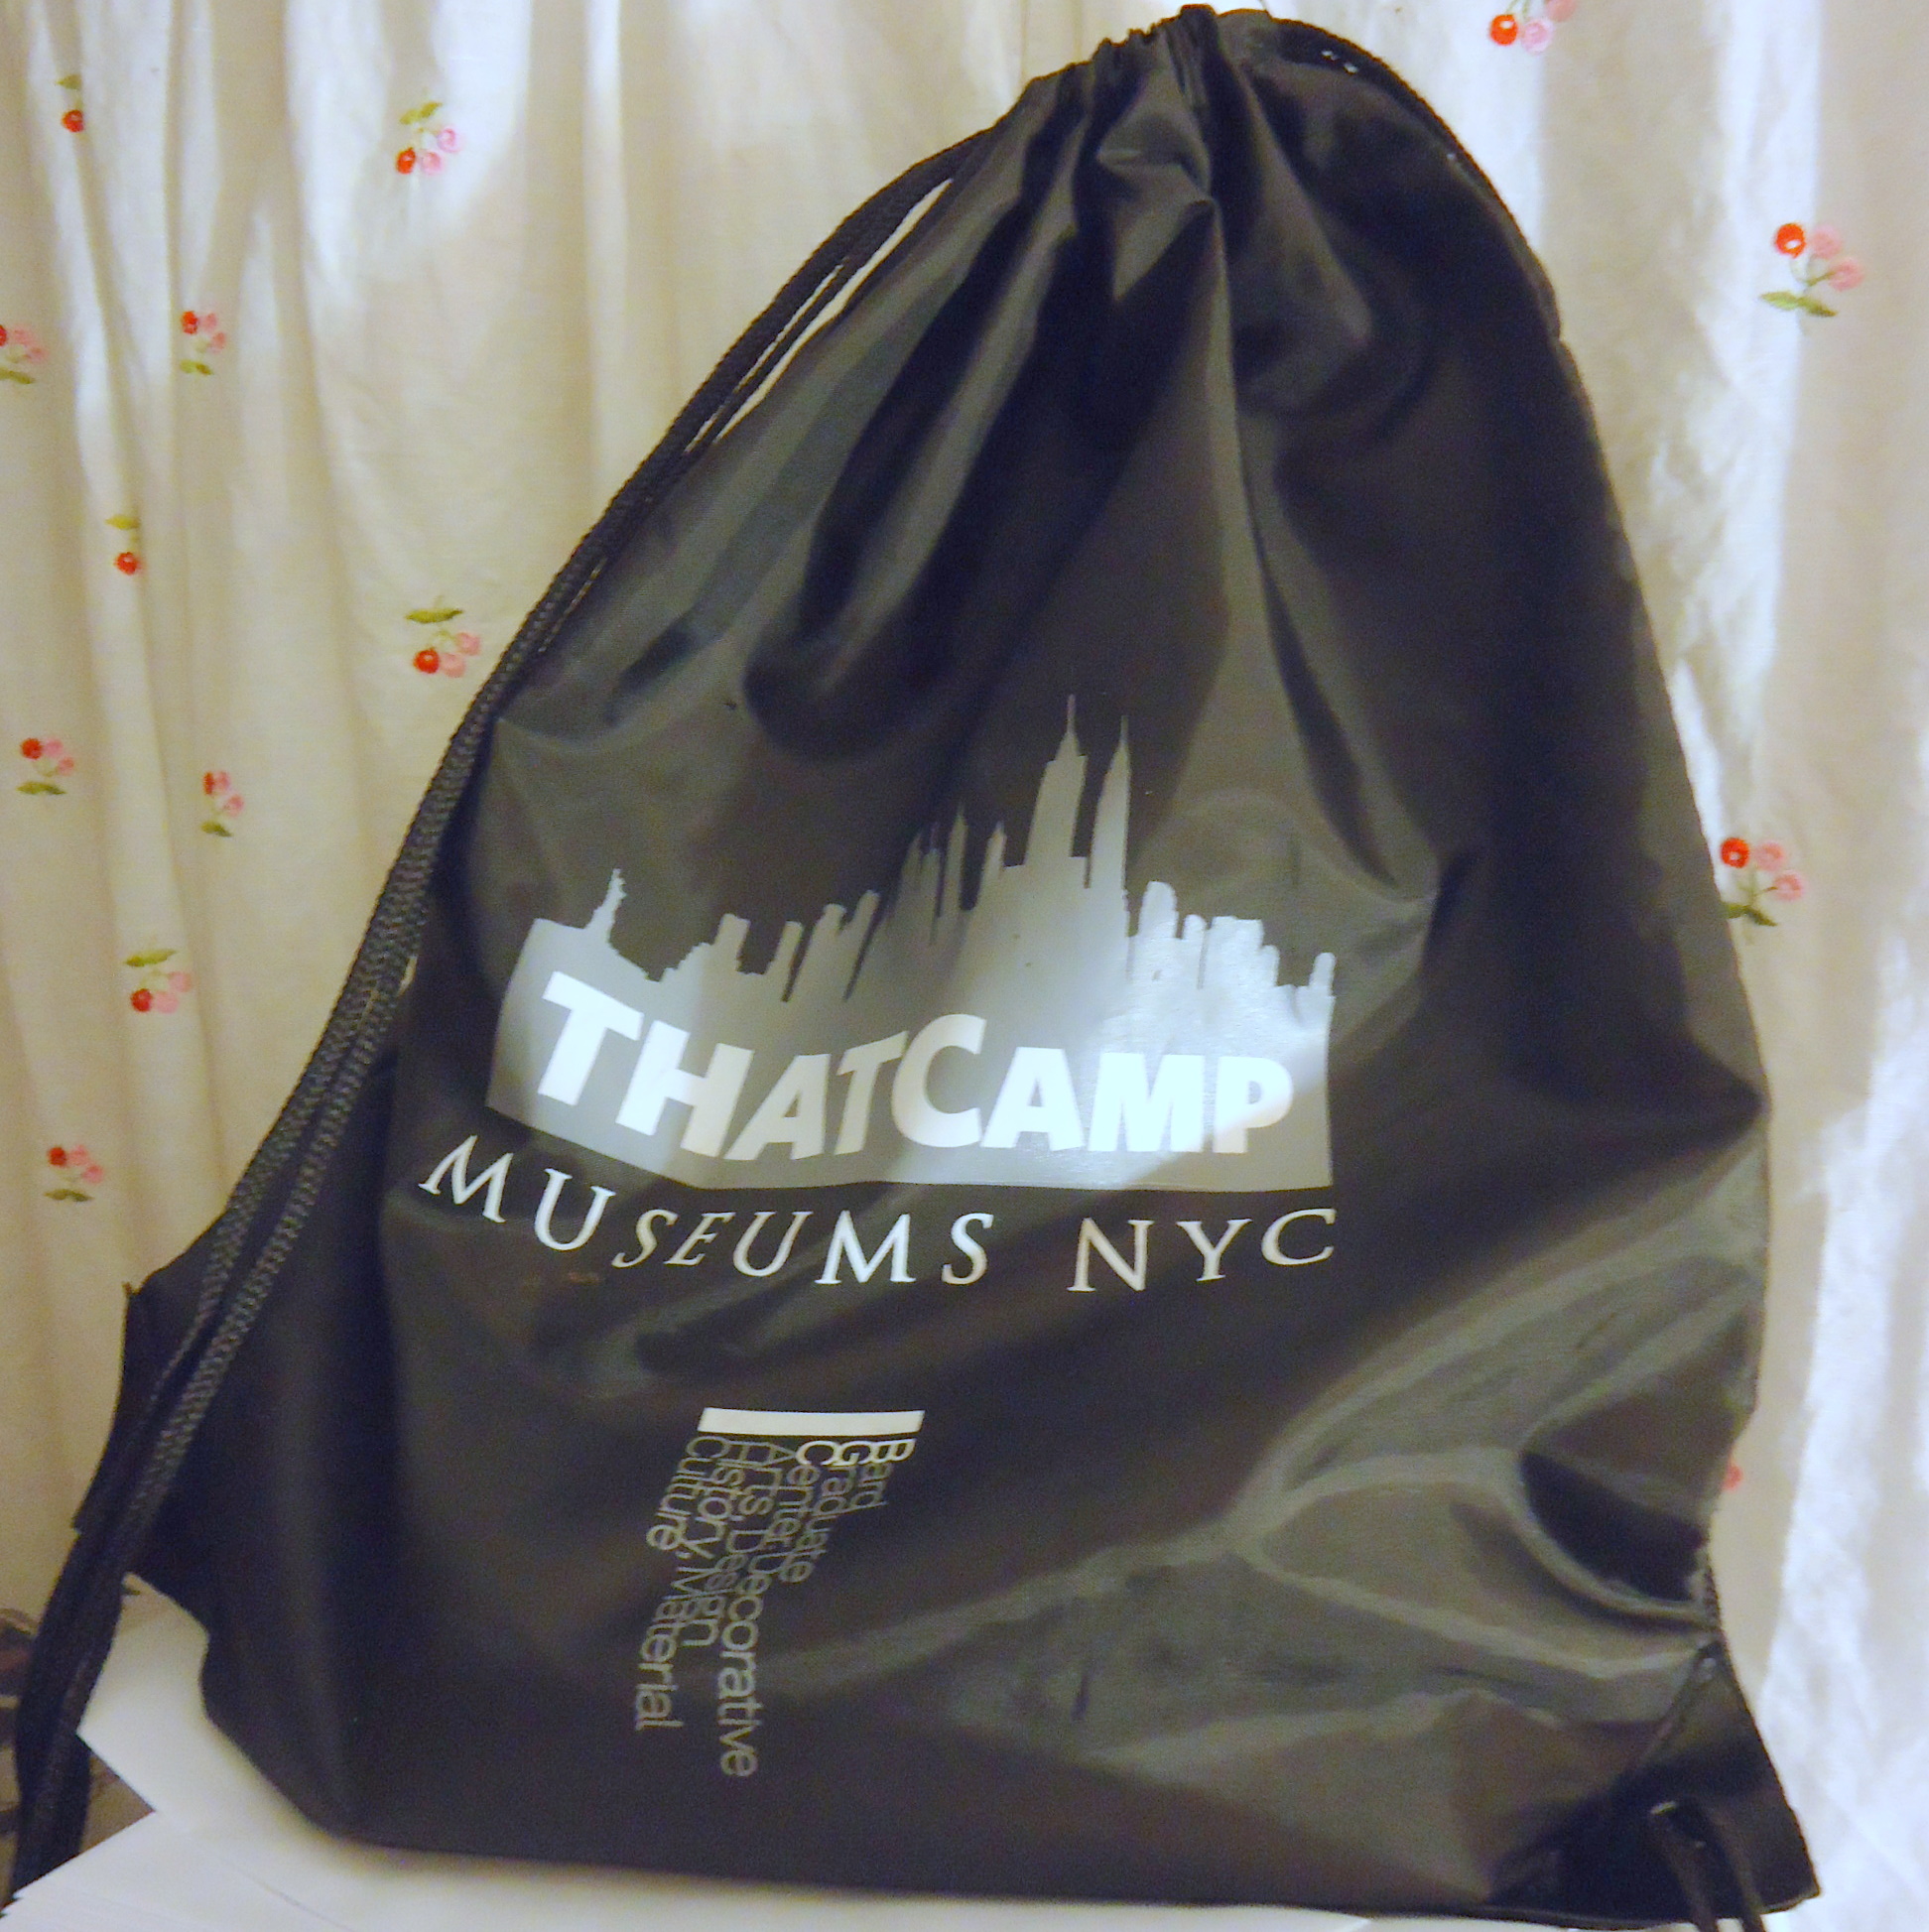 THATCamp Museums NYC souvenir bag